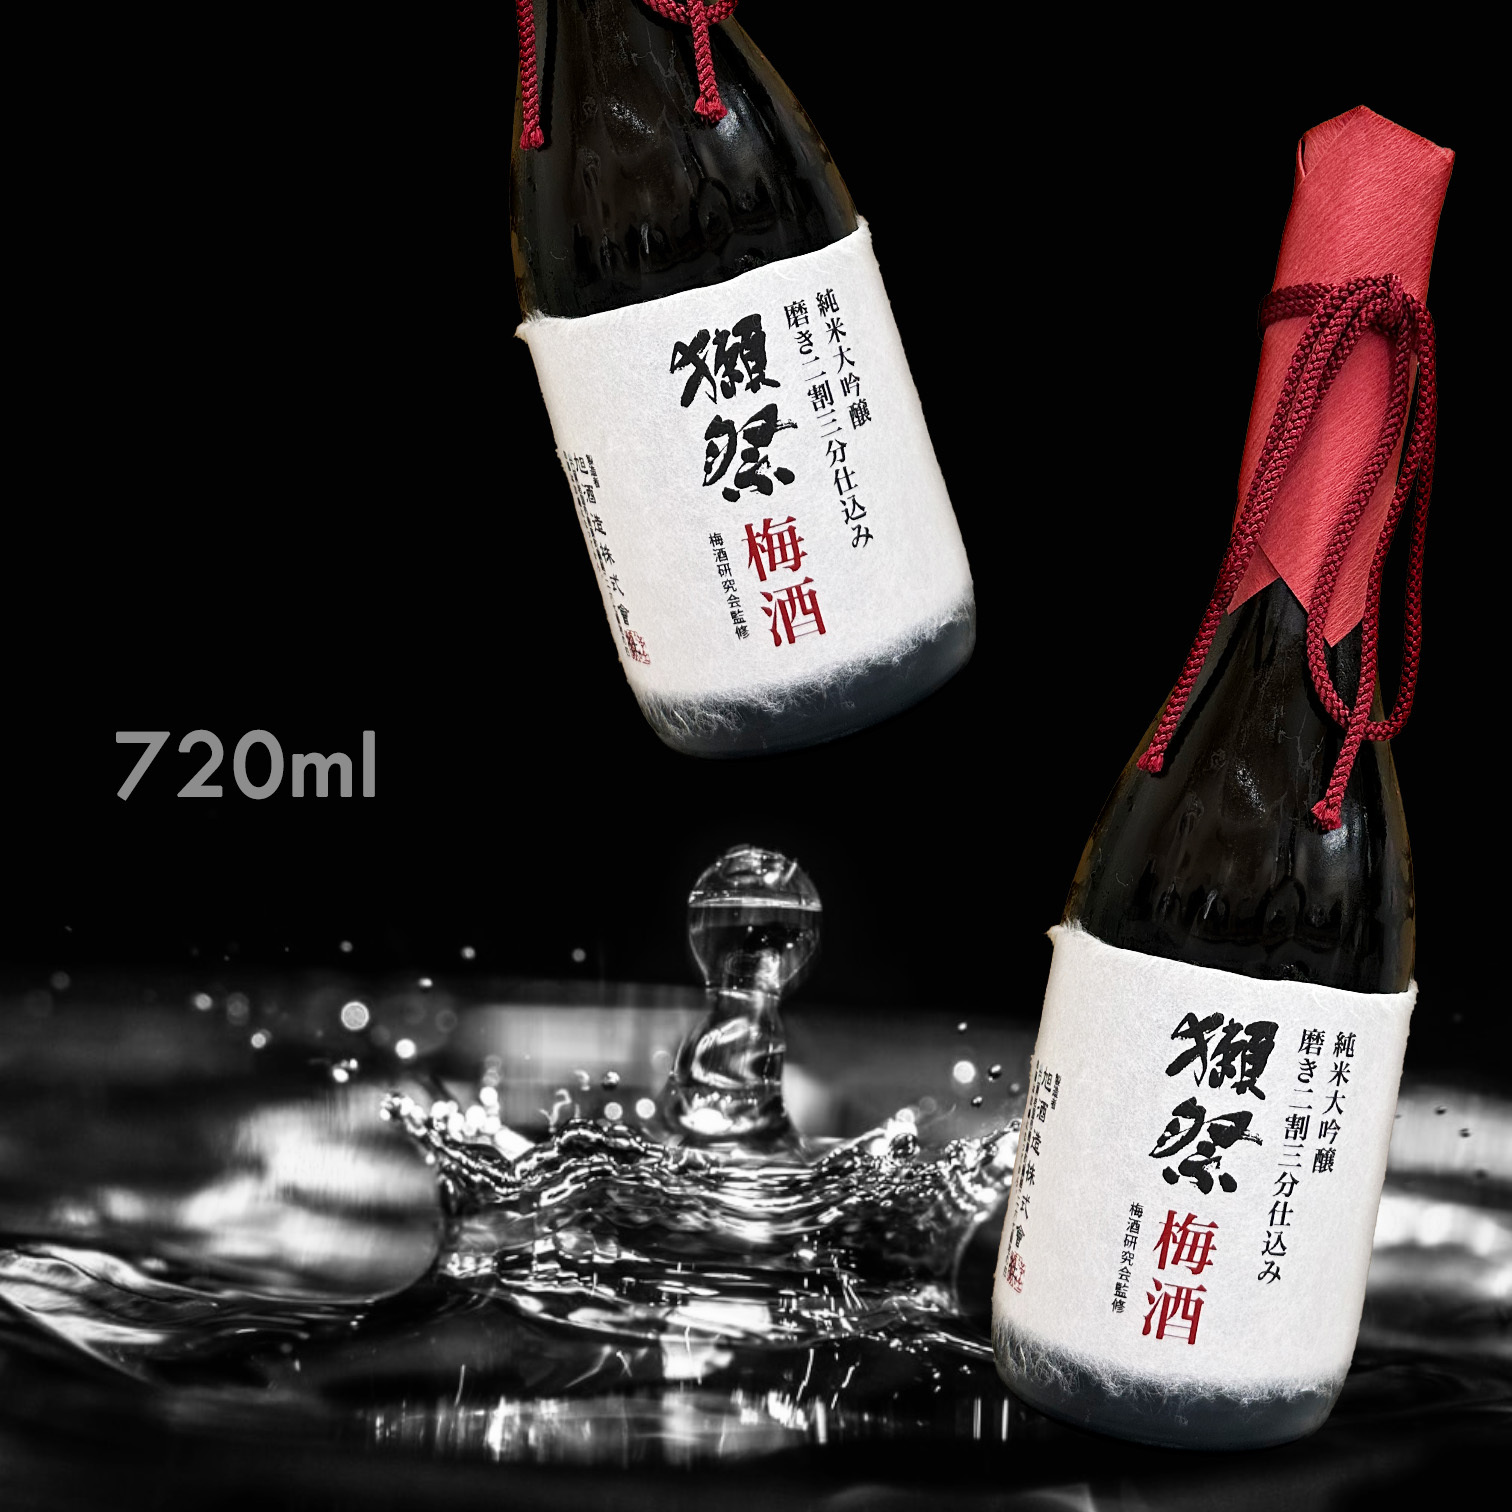 獺祭磨き二割三分仕込み純米大吟釀梅酒(一年一回限量釀造)|AMALL清酒店 